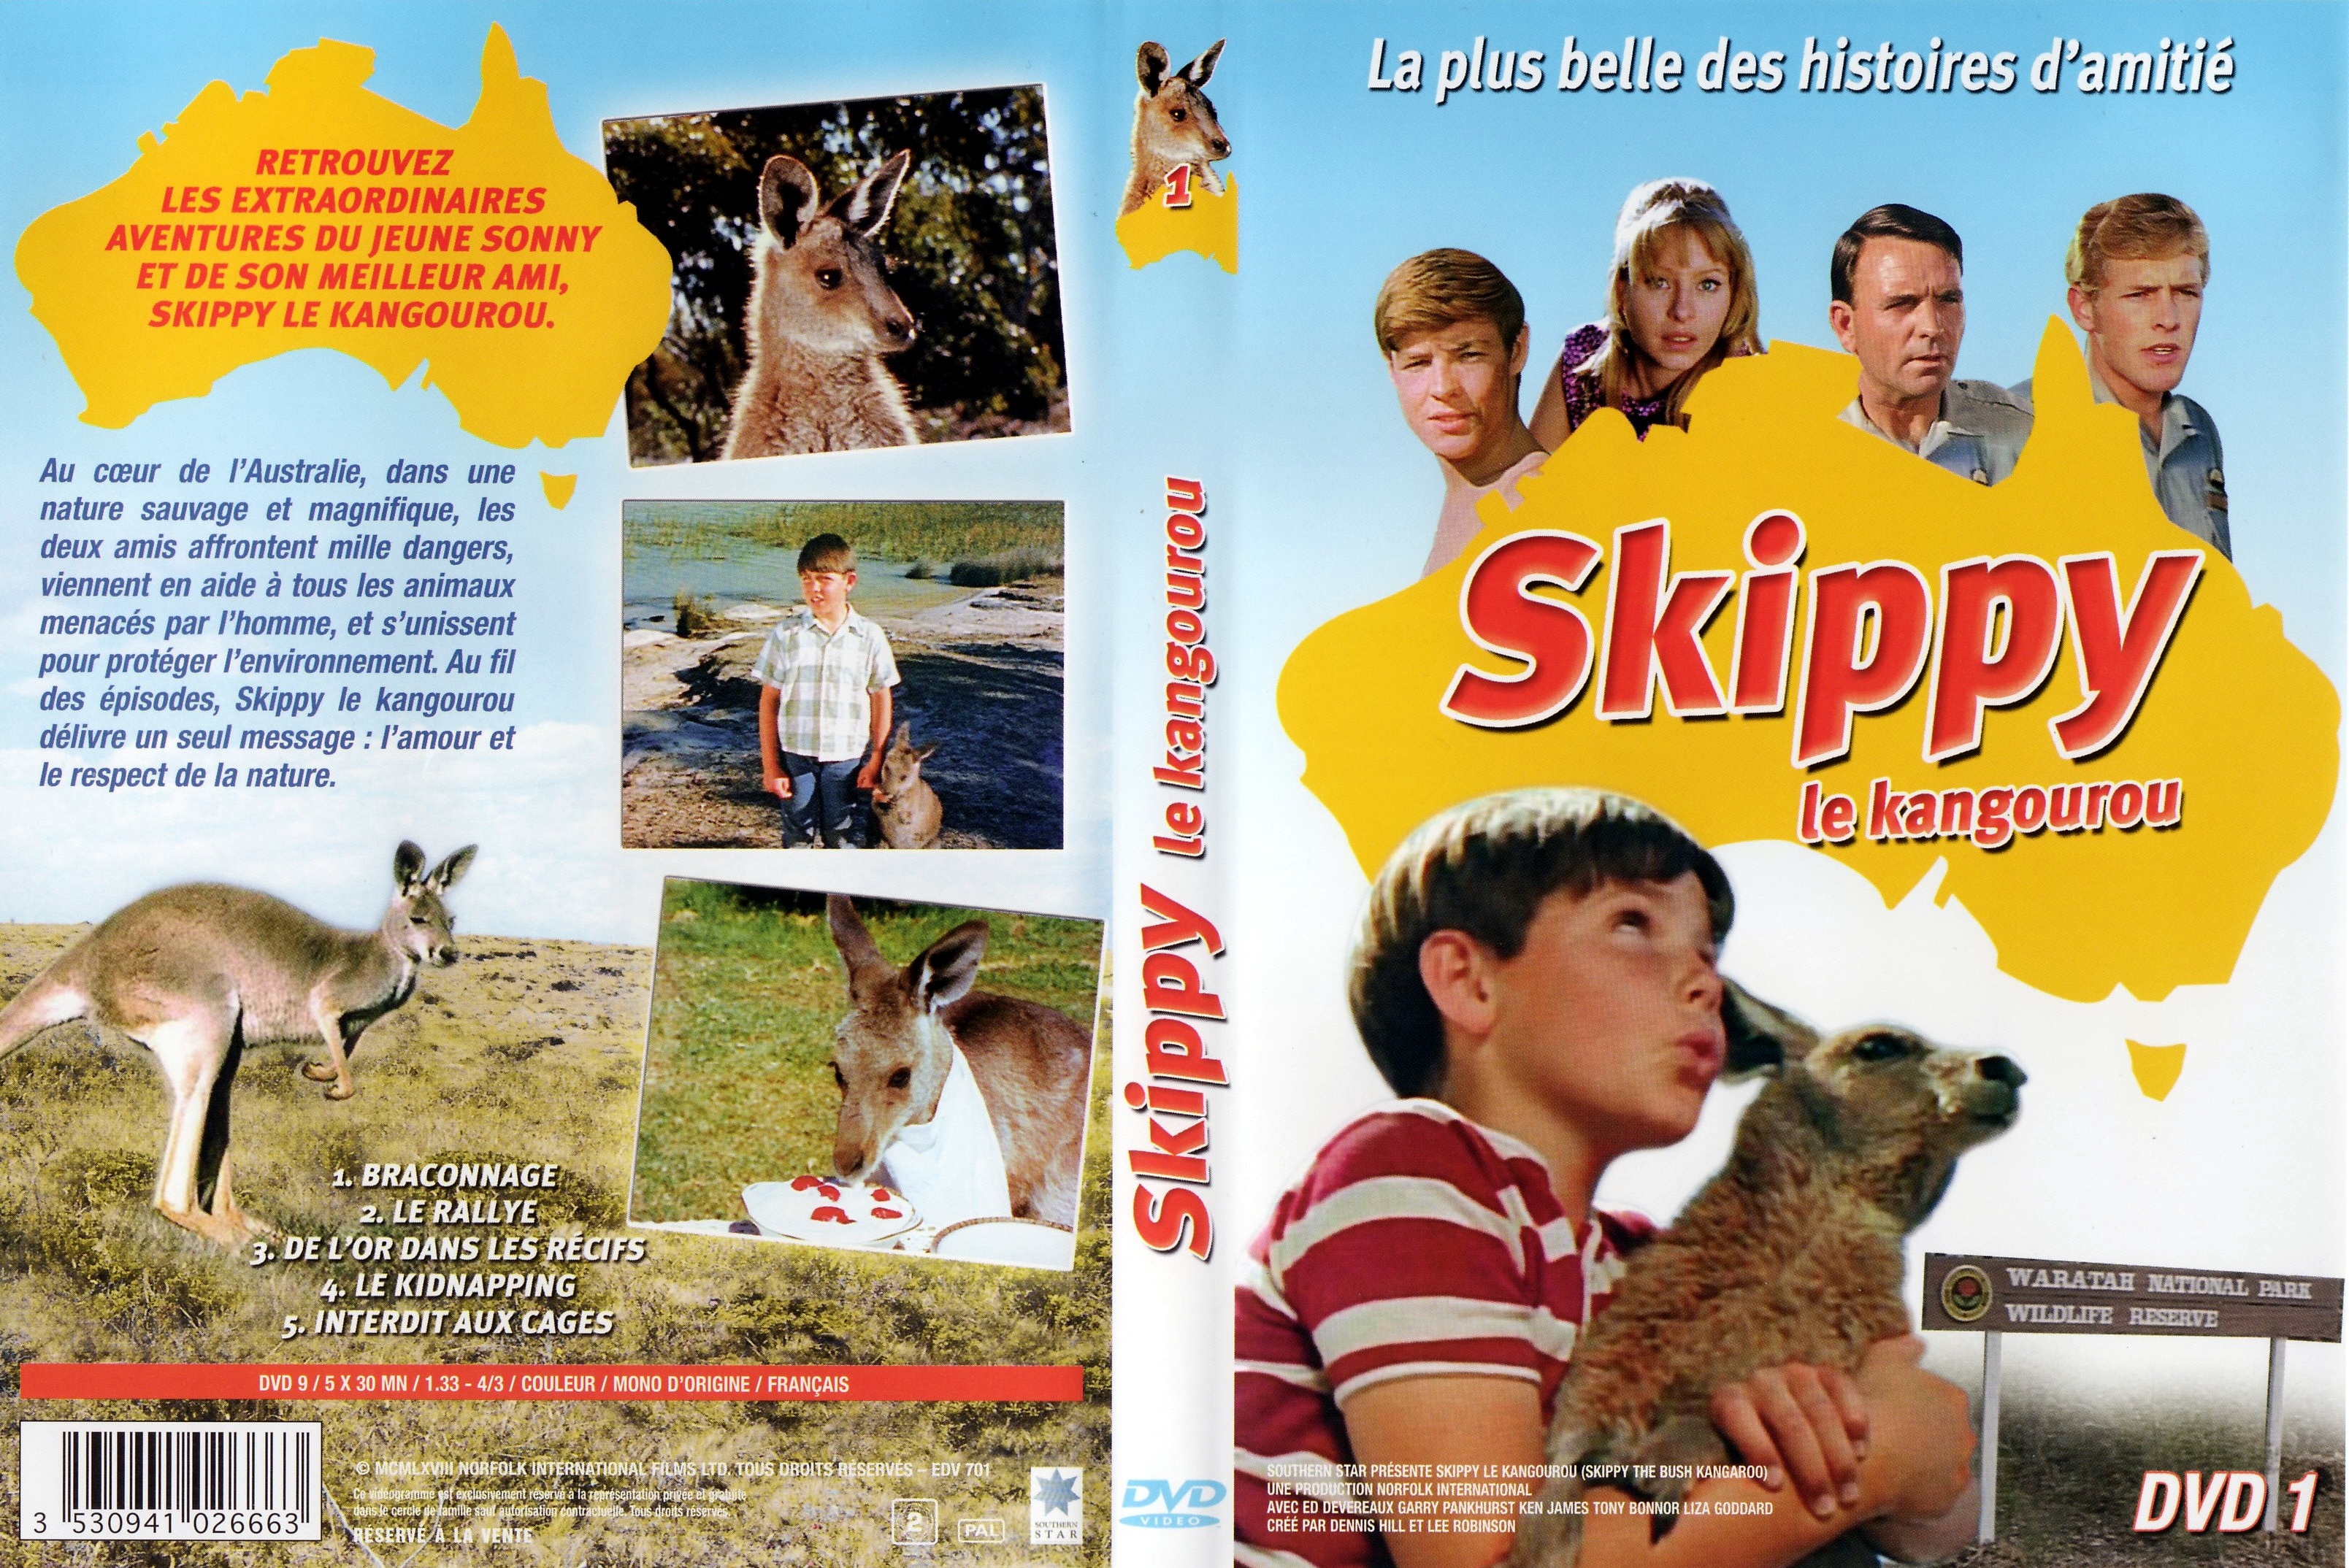 Jaquette DVD Skippy le kangourou DVD 1